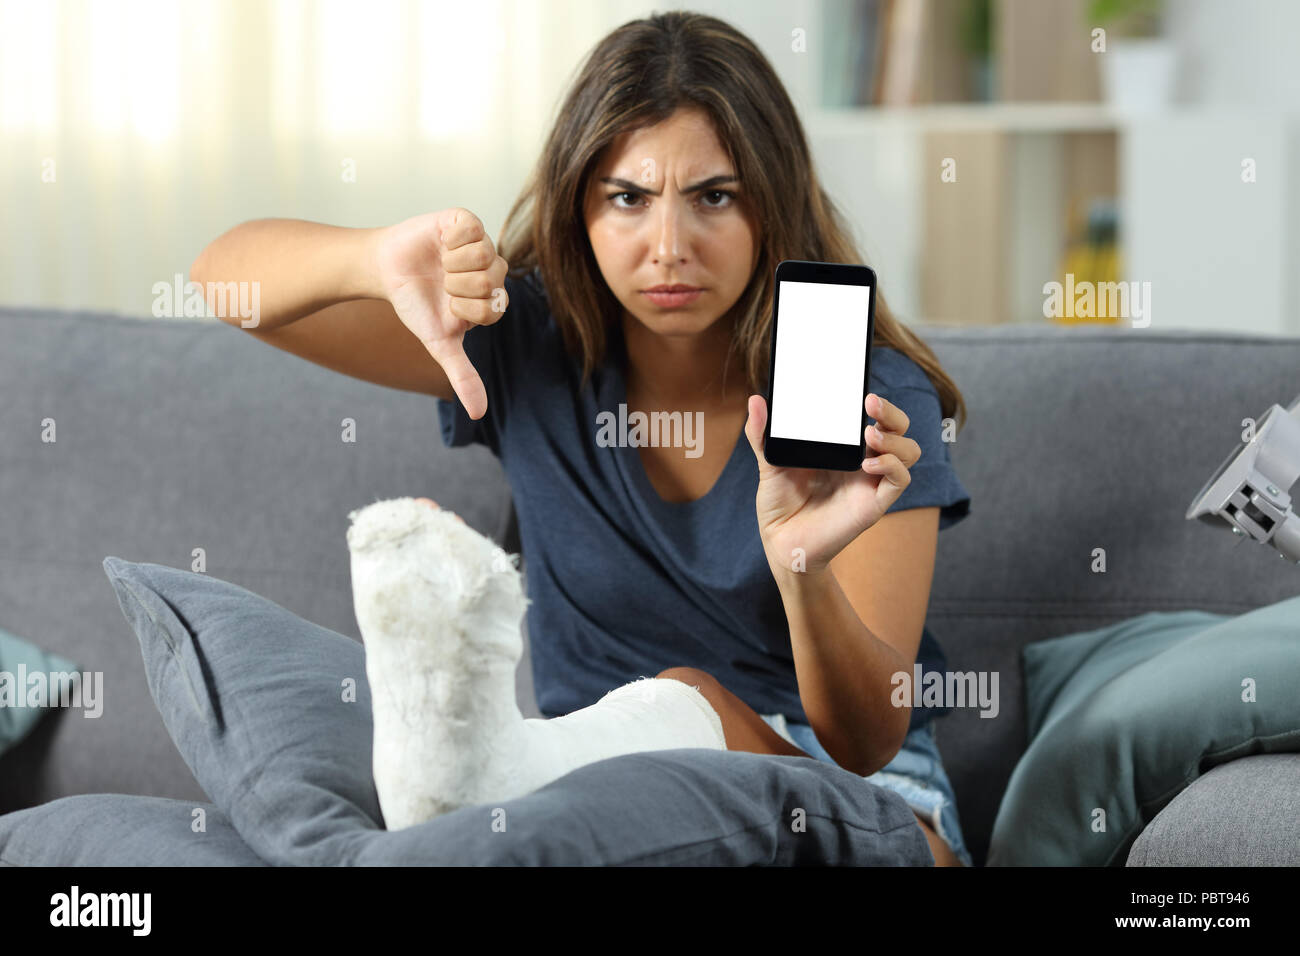 Просто в телефоне сидим. Женщина сидит в телефоне. Сидит за телефоном. Девушка сидит на диване. Злая девушка с телефоном.